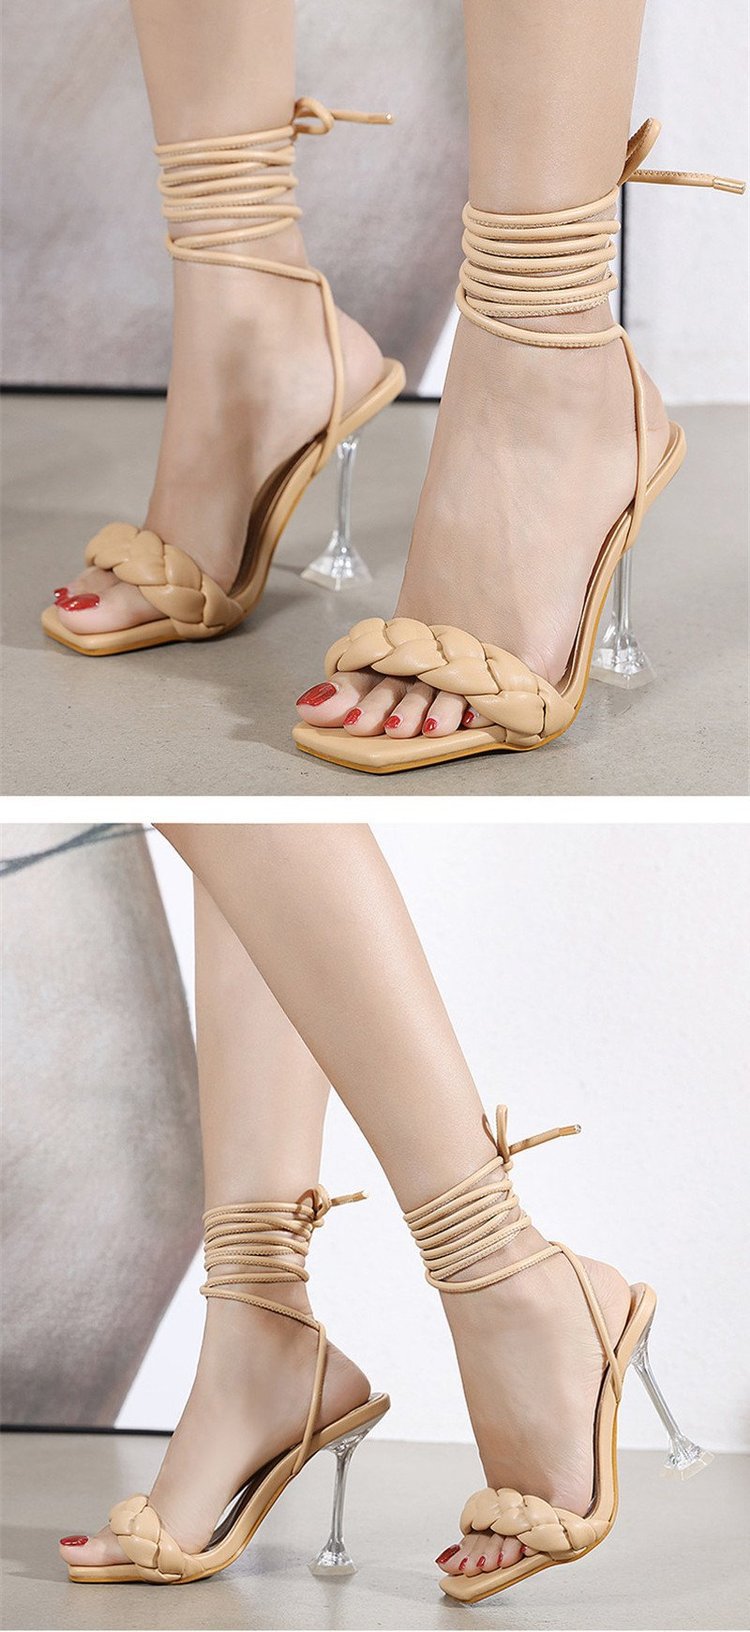 Square Toe Stiletto Sandals NSYBJ71281